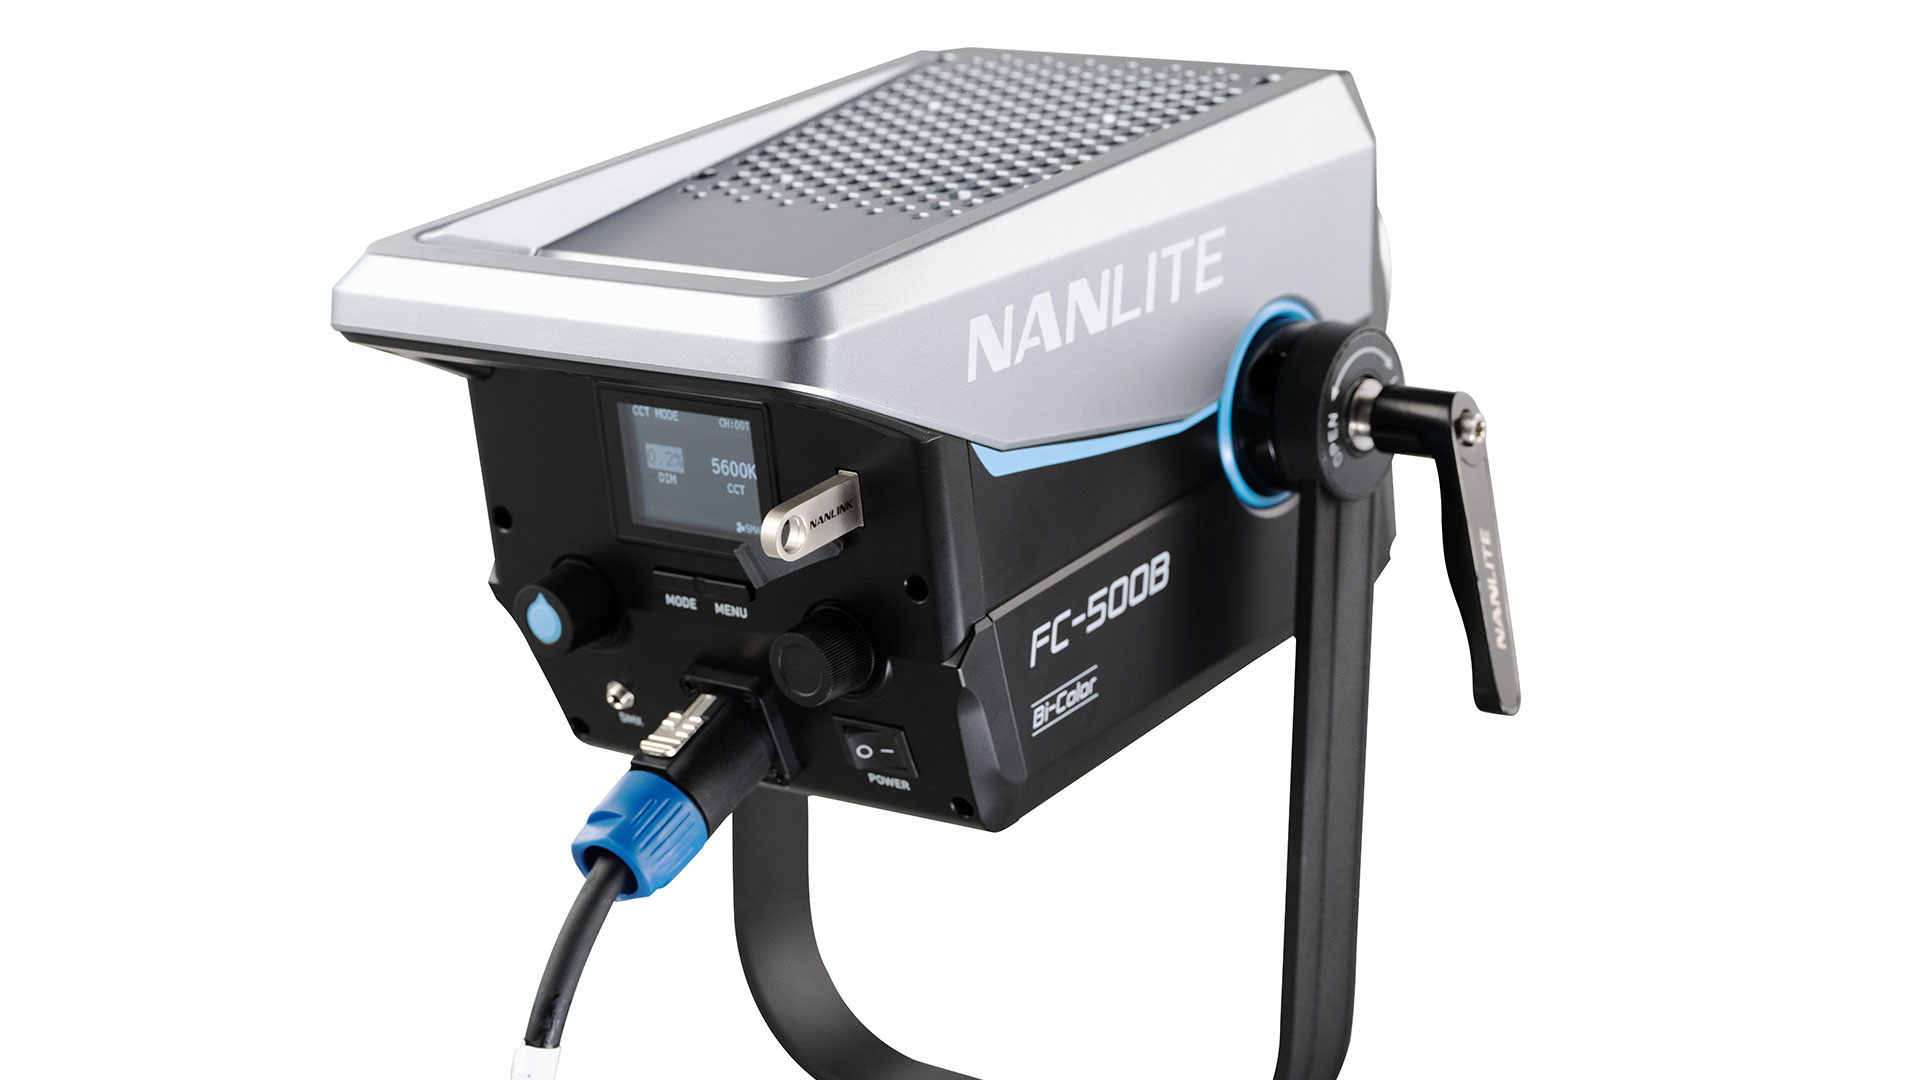 NANLITEがFC-300BおよびFC-500BバイカラーLEDスポットライトを